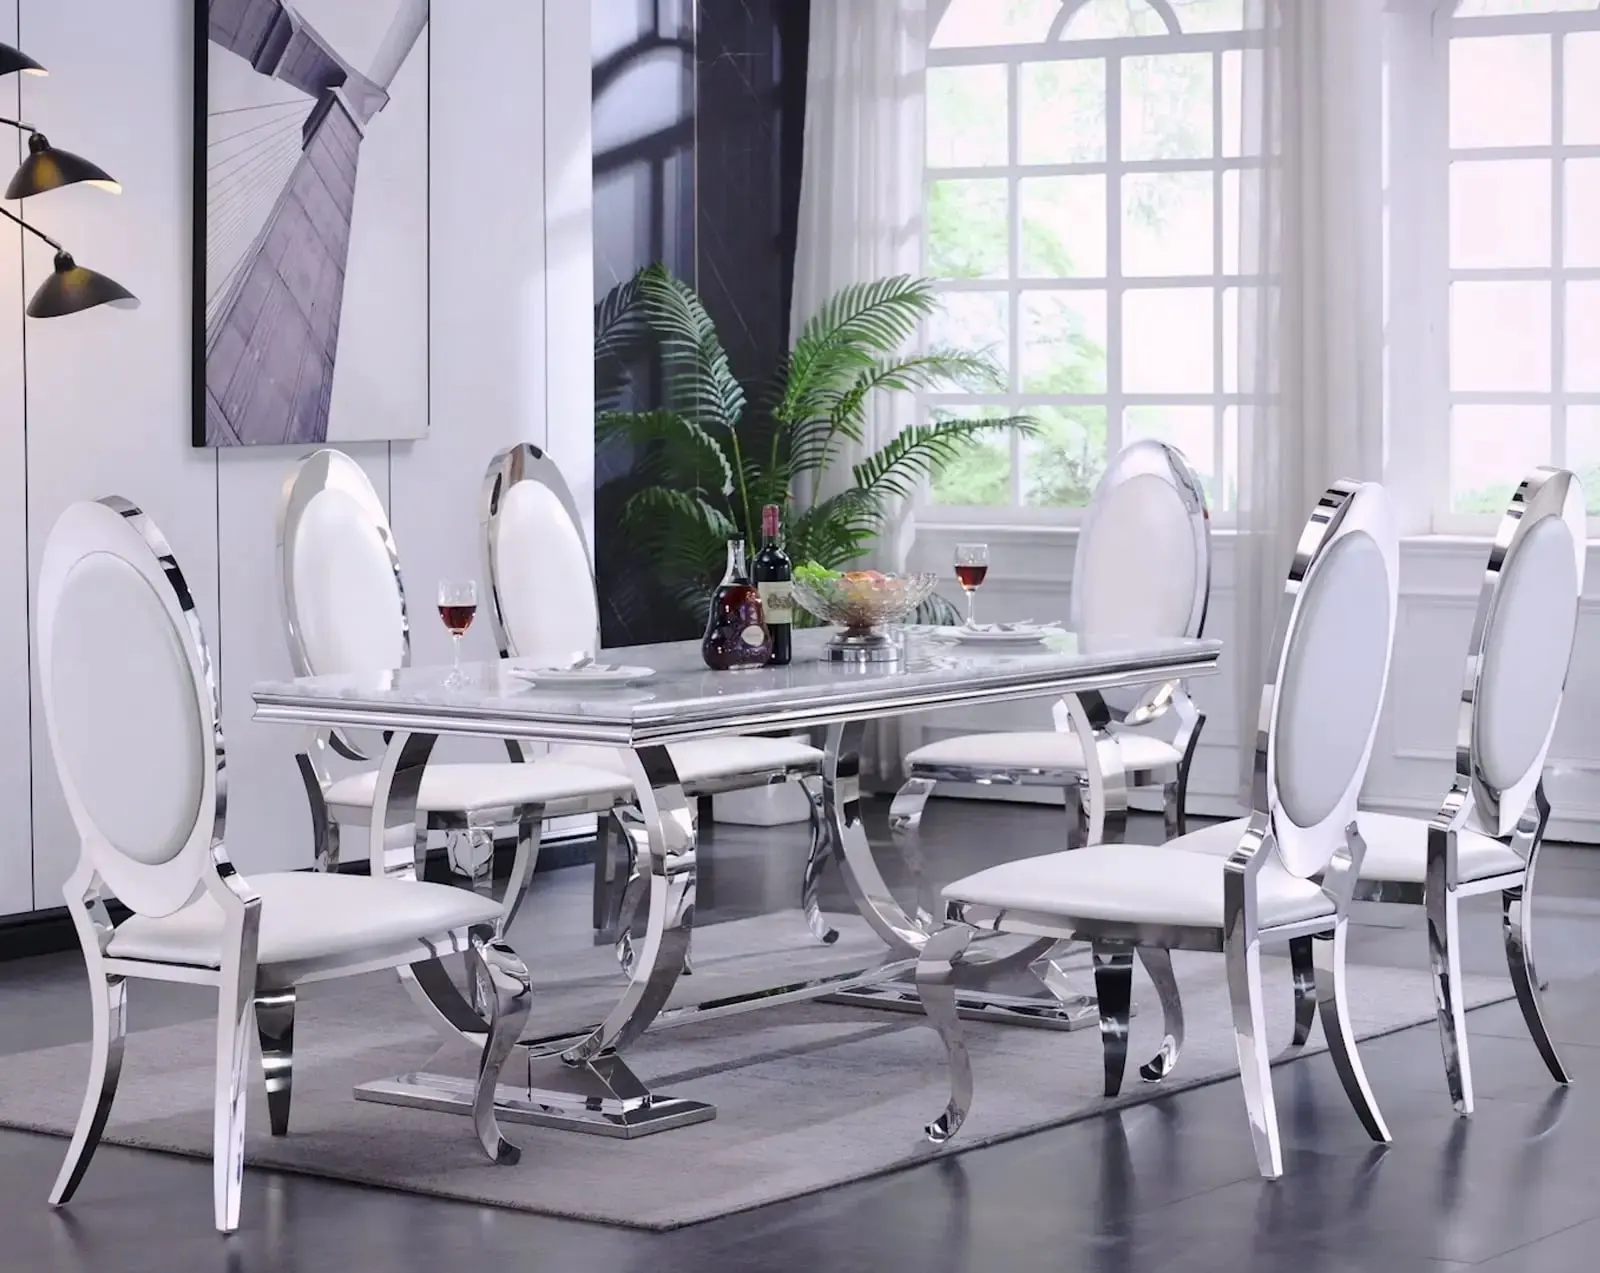 Diseño moderno diseñador famoso muebles de sala de estar plata color negro patas de acero inoxidable comedor banquete silla para eventos